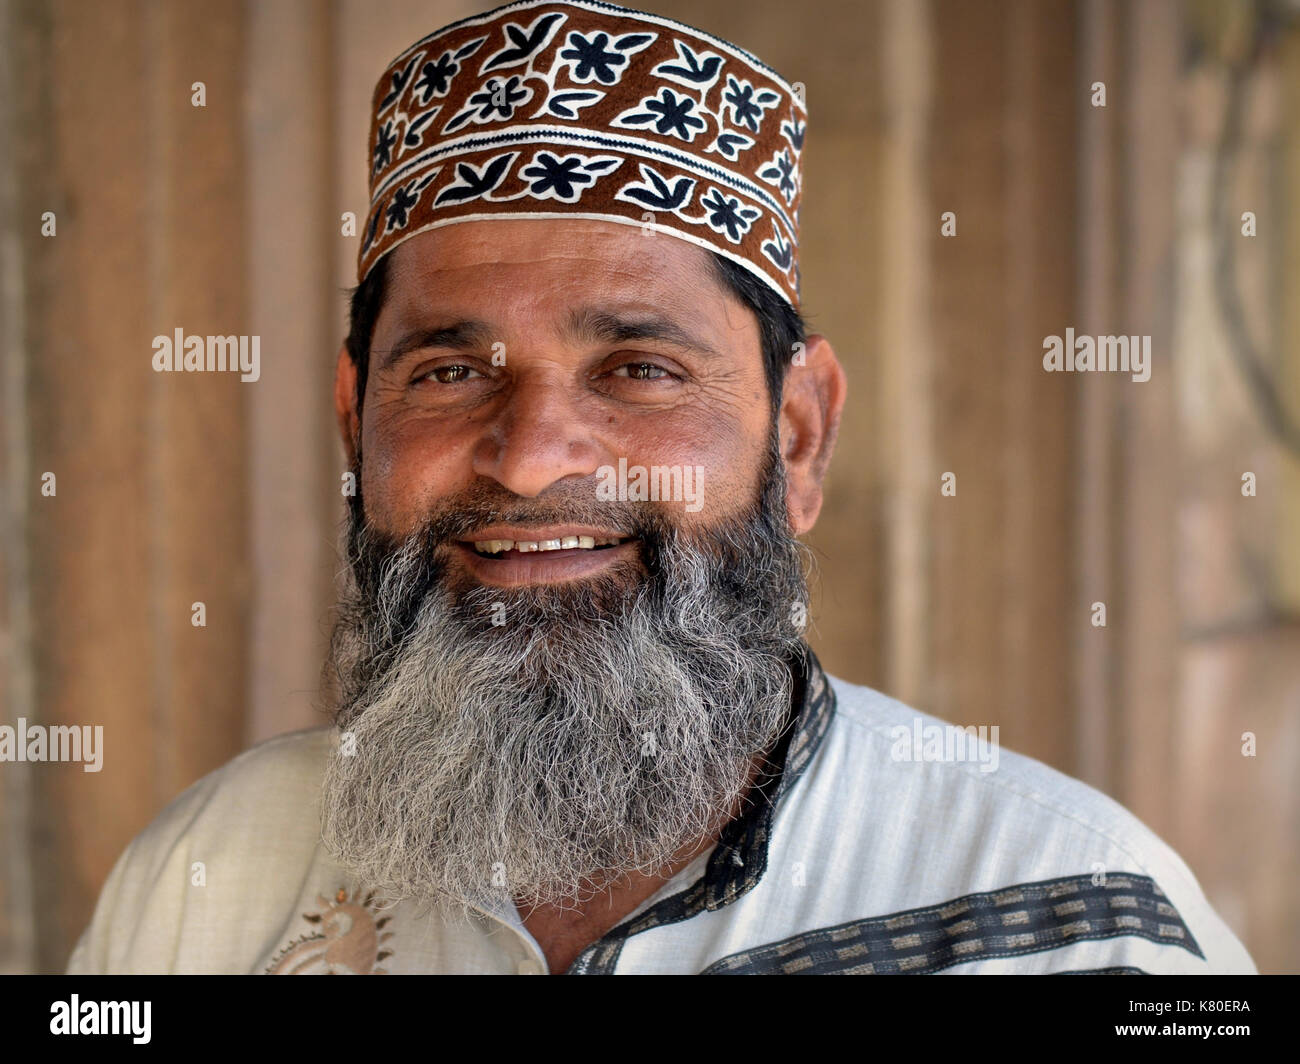 Der indische muslimische Mann mit einem im muslimischen Stil gestutzten Vollbart trägt eine gemusterte islamische Betkappe (taqiyah) im omanischen Stil und lächelt für die Kamera. Stockfoto